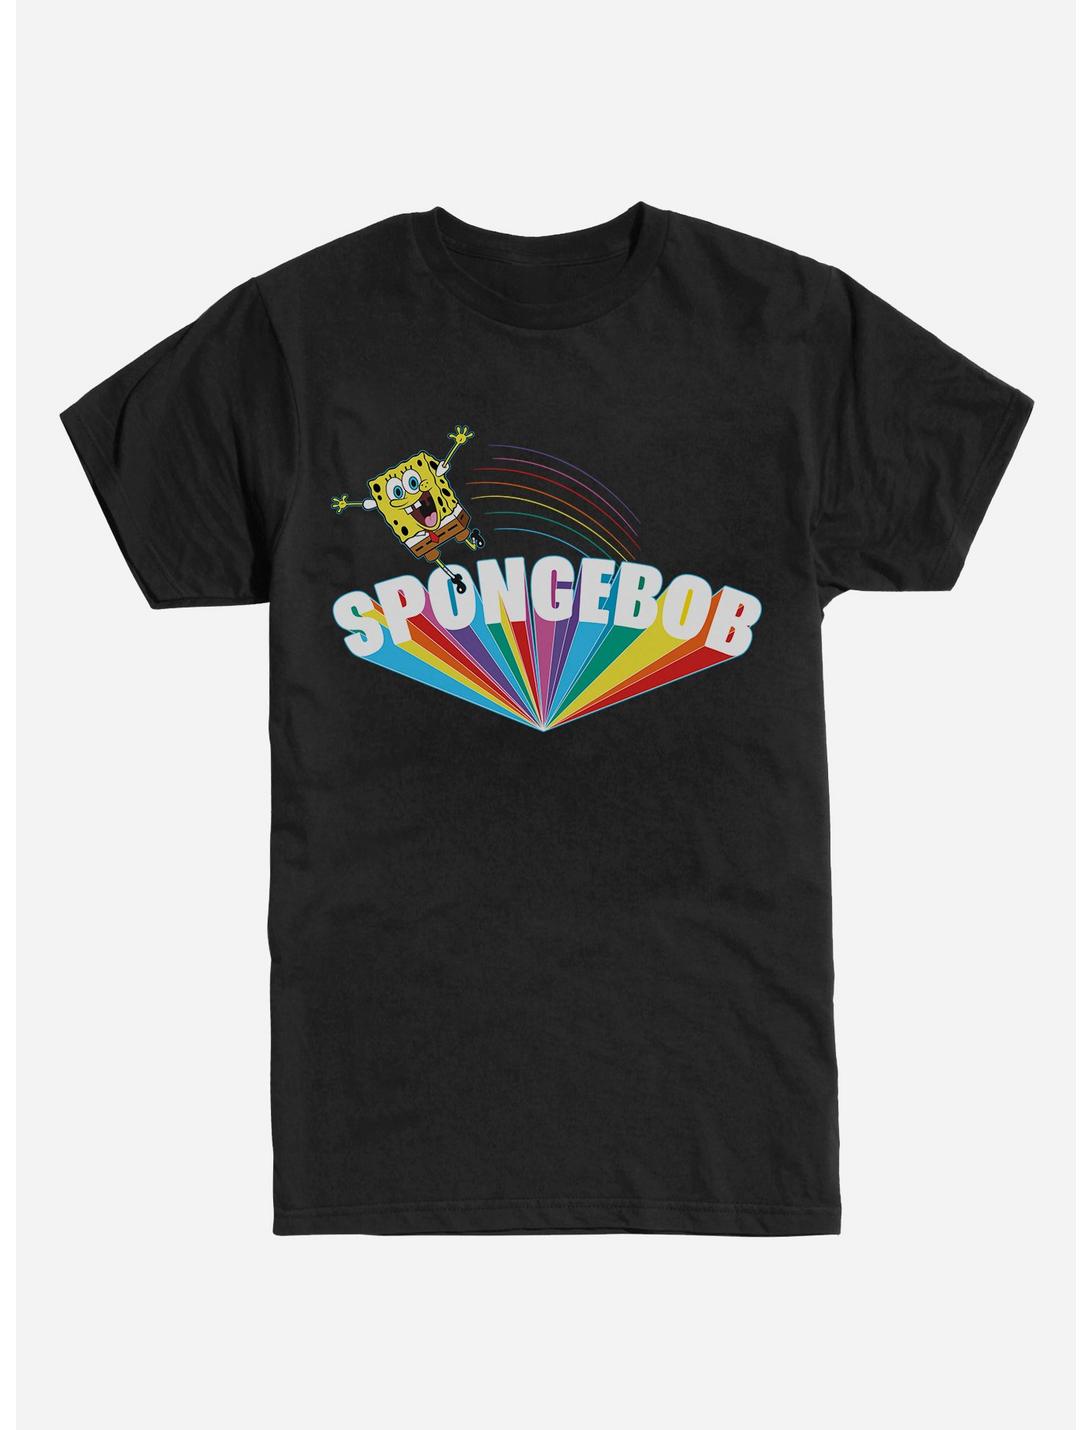 SpongeBob SquarePants Big Font Rainbow T-Shirt, BLACK, hi-res